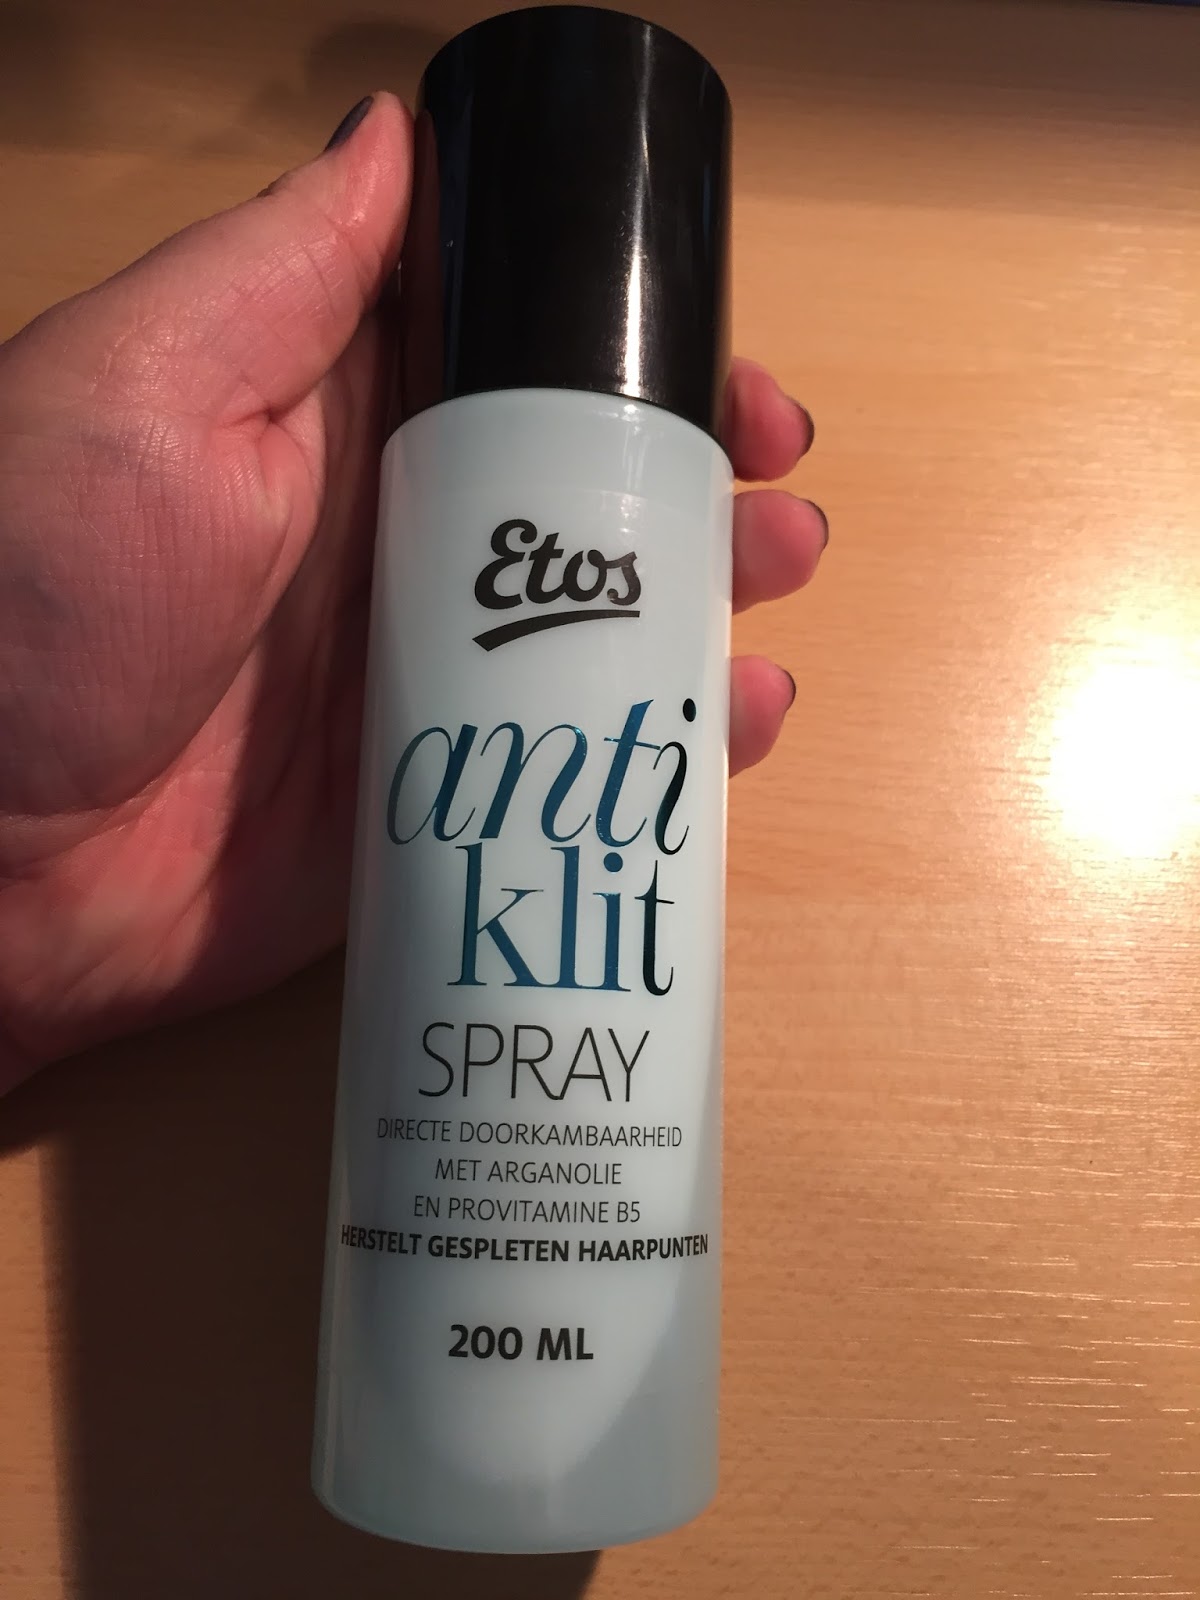 De stad Superioriteit Heerlijk Anne-Wil Kraan: Review Etos anti klit spray